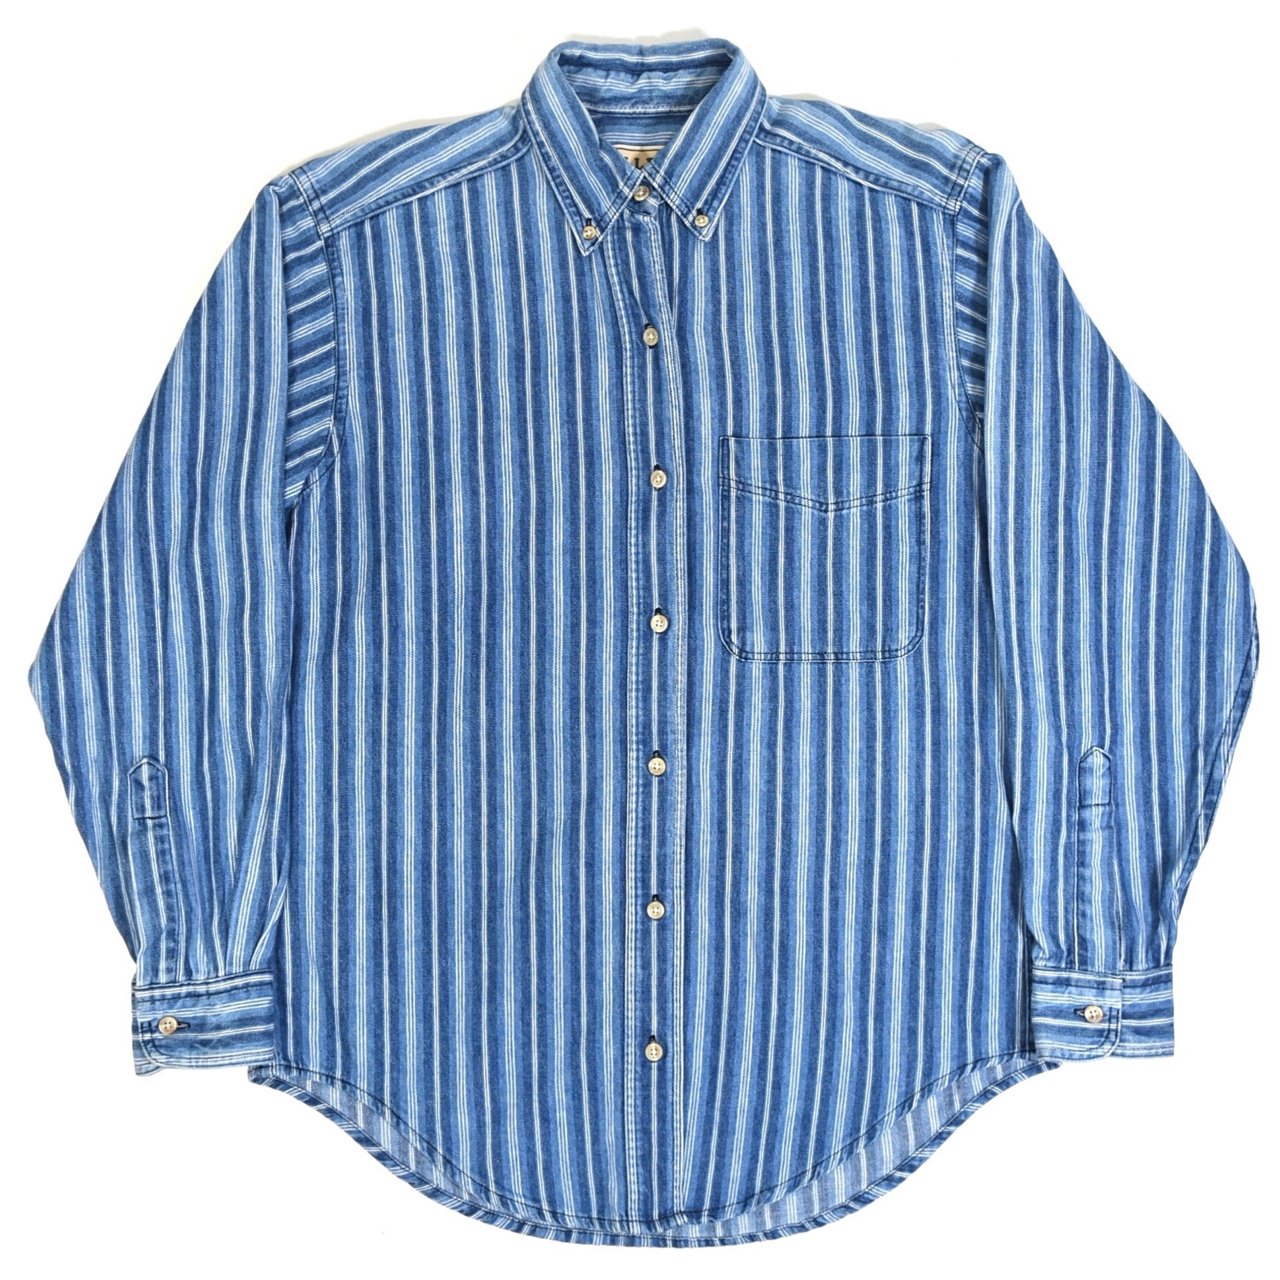 1990s L.L.Bean L/S Shirts S MADE IN USA Indigo stripe